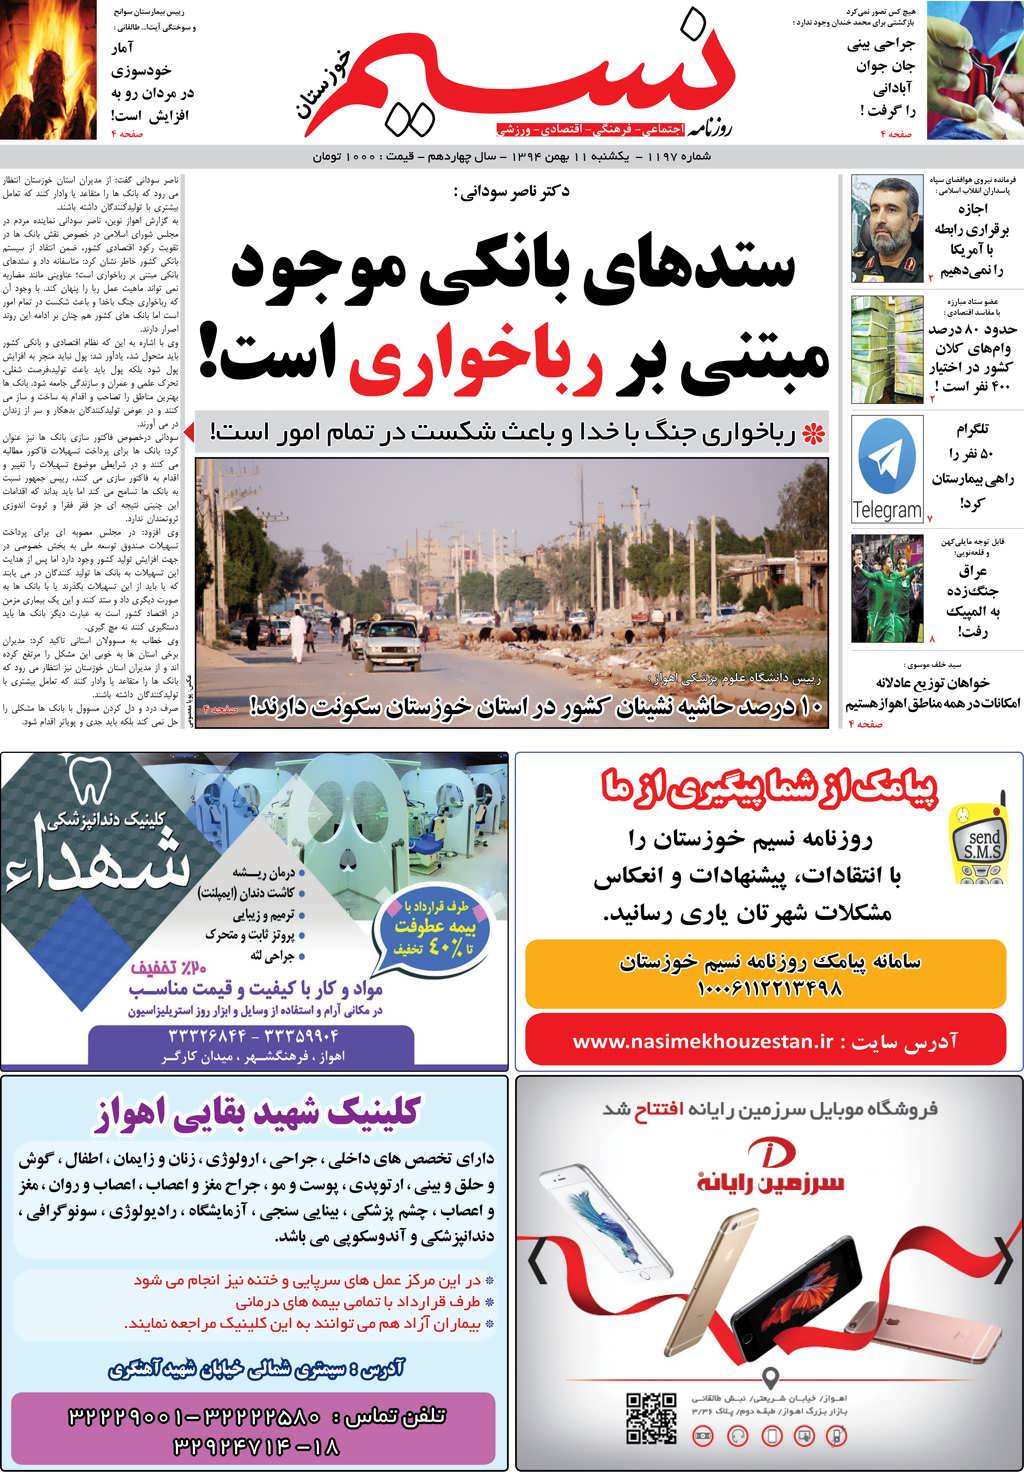 صفحه اصلی روزنامه نسیم شماره 1197